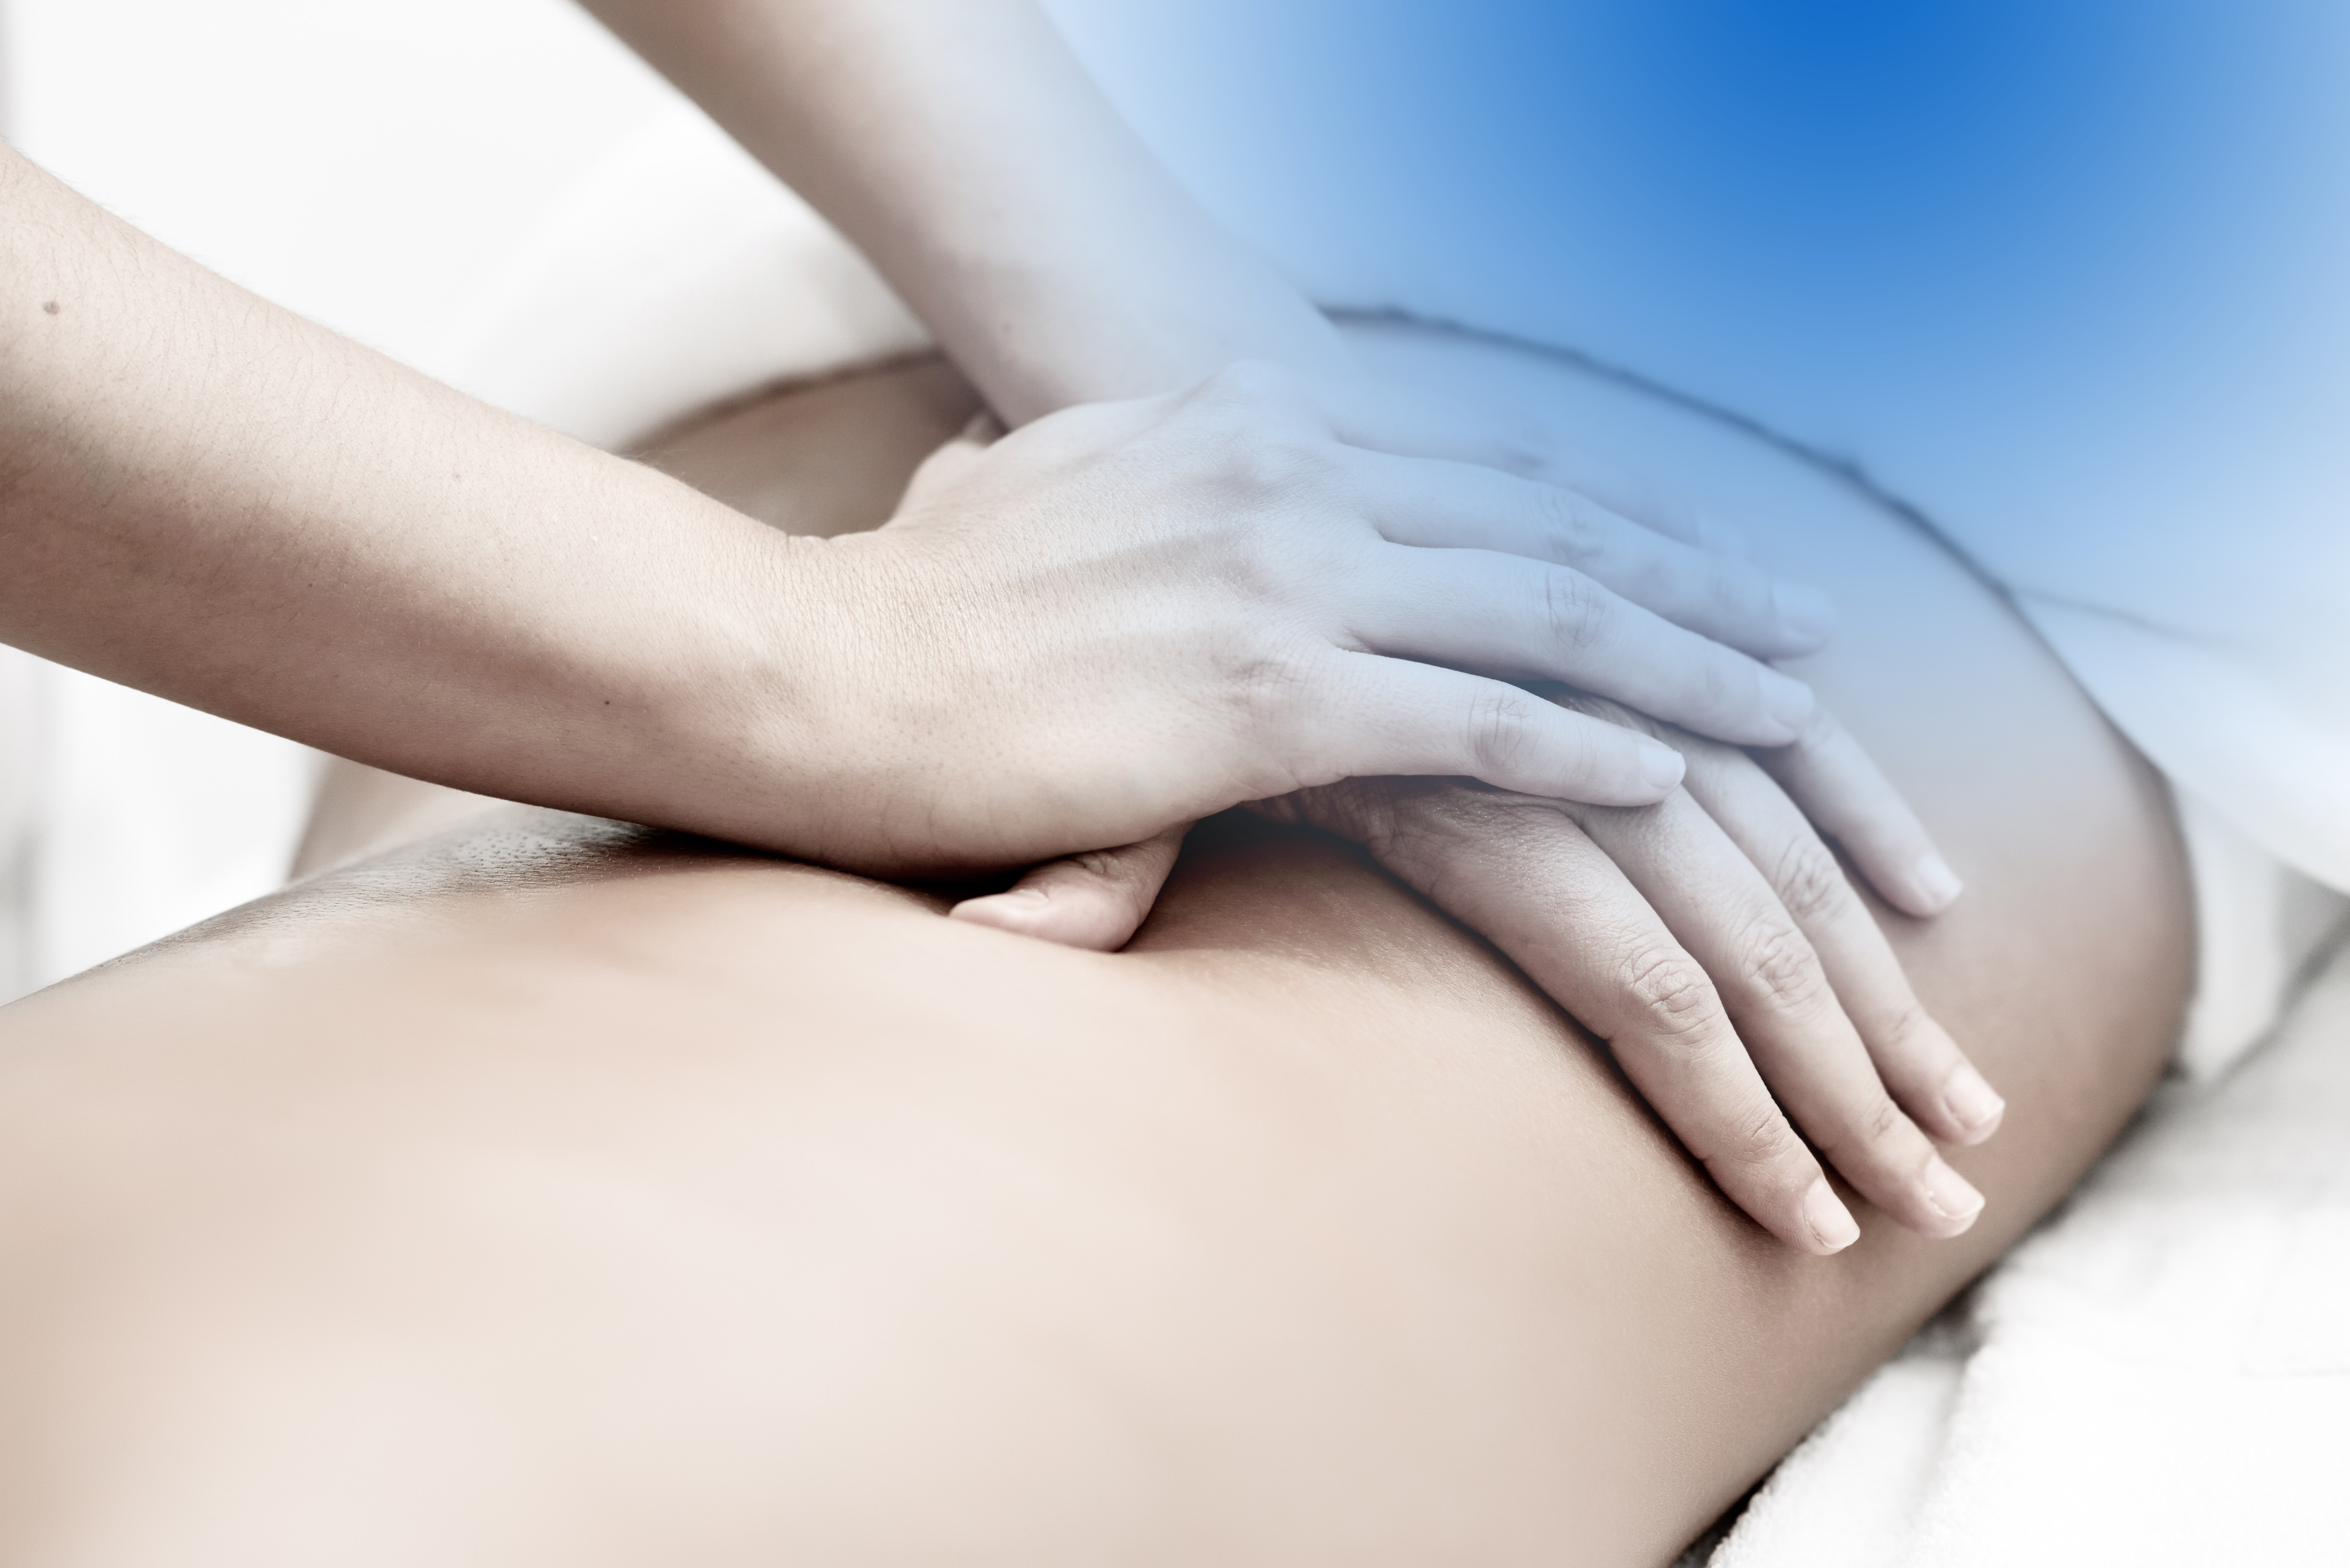 Massage Therapy for Sciatica Near Me